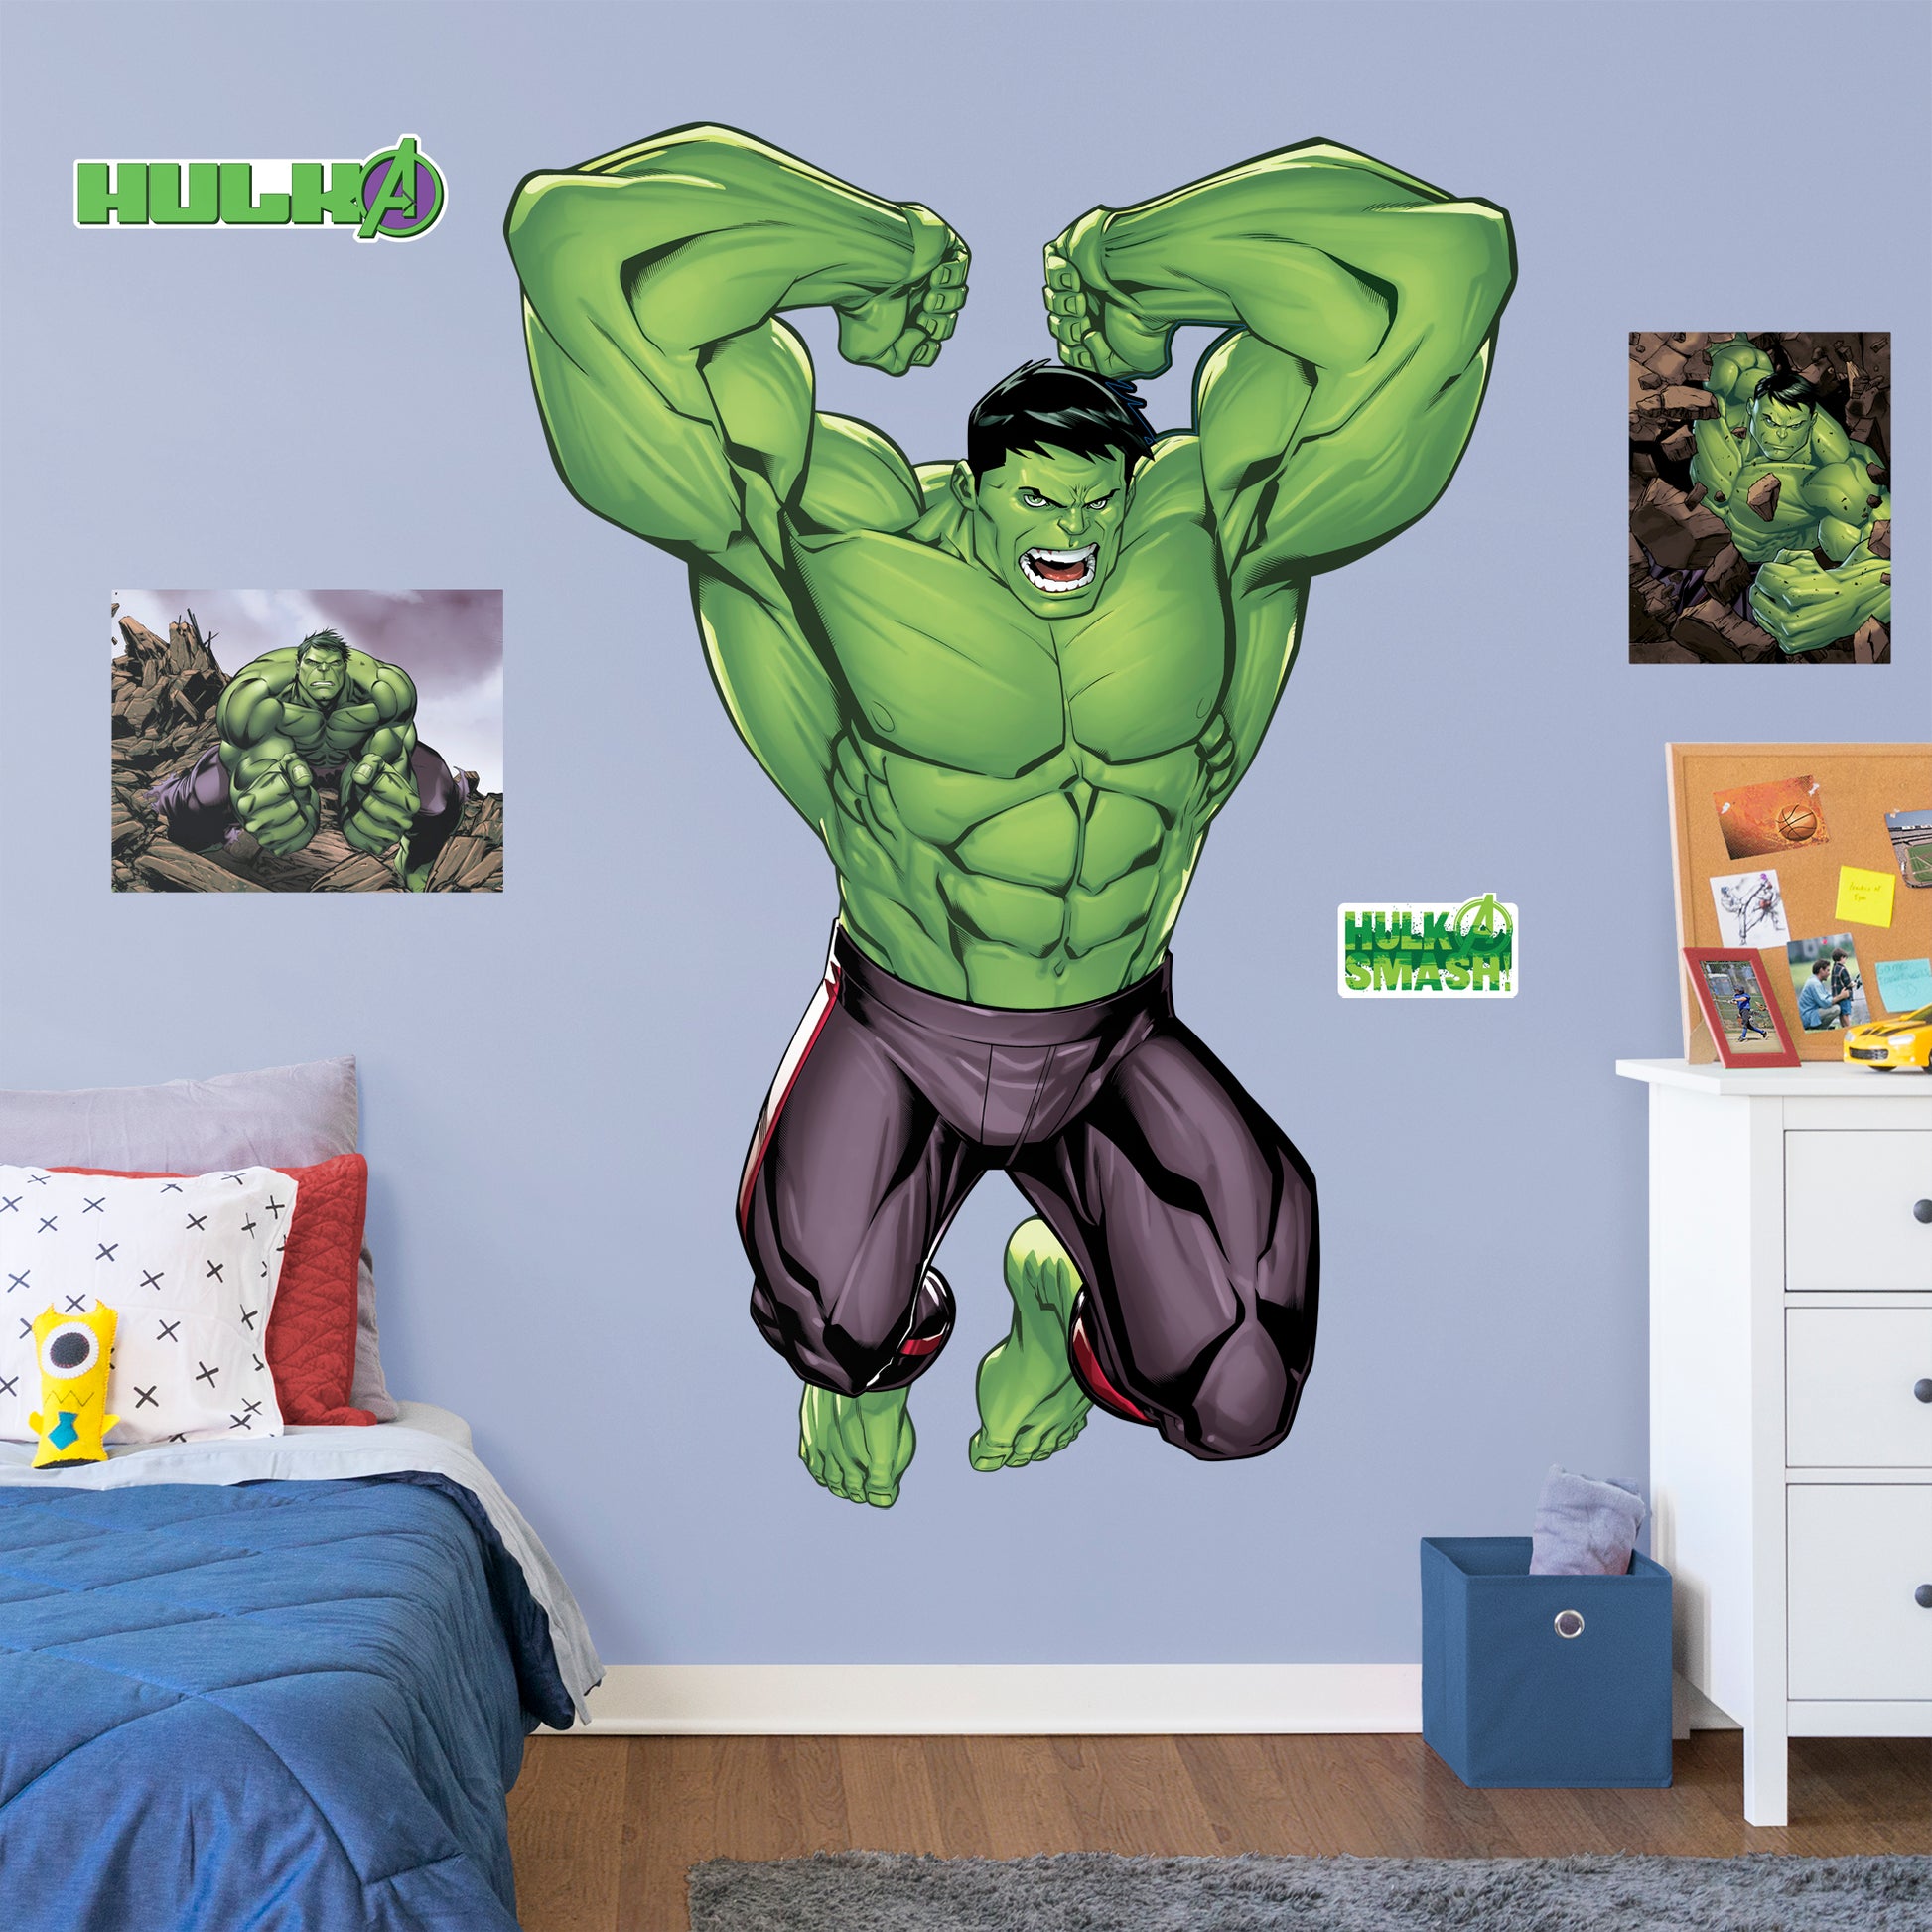 Disney Store Costume Hulk pour bébé